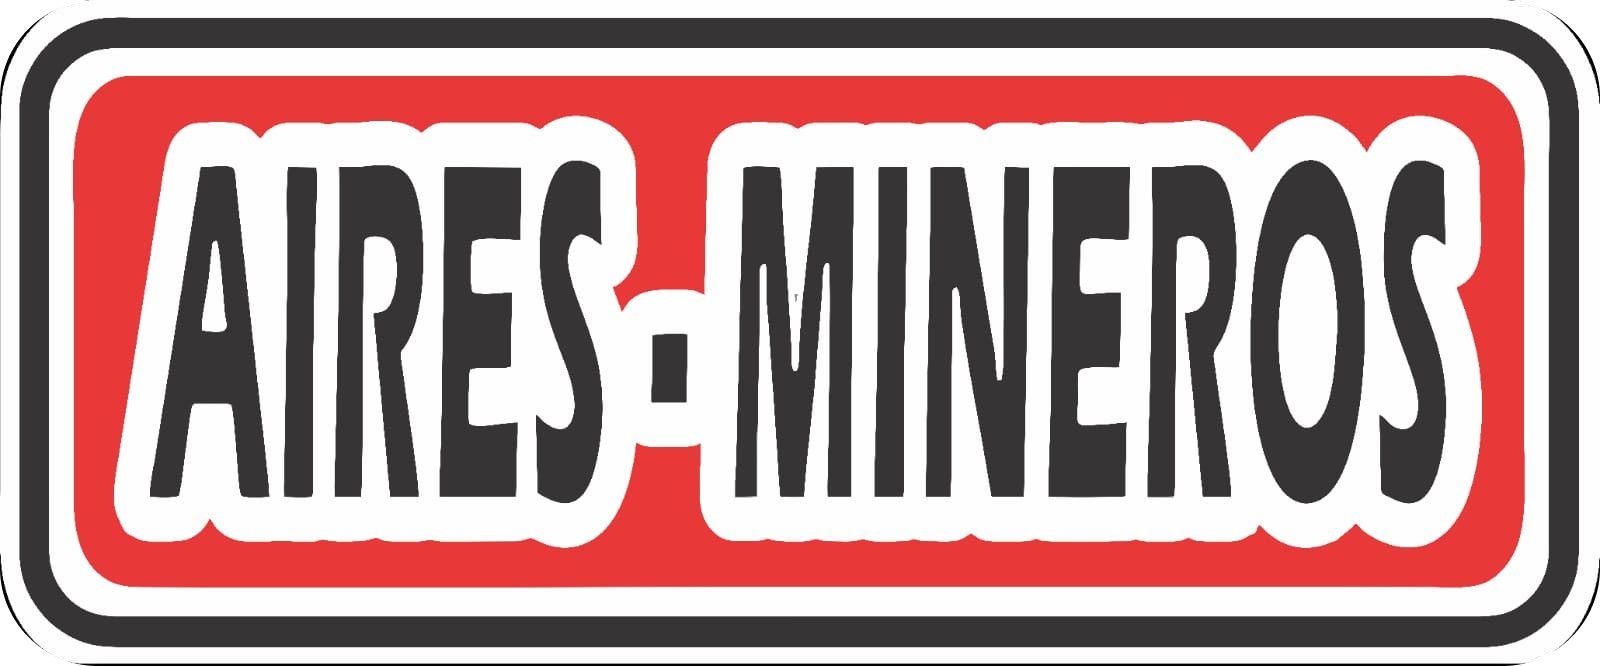 Aires Mineros Logotipo